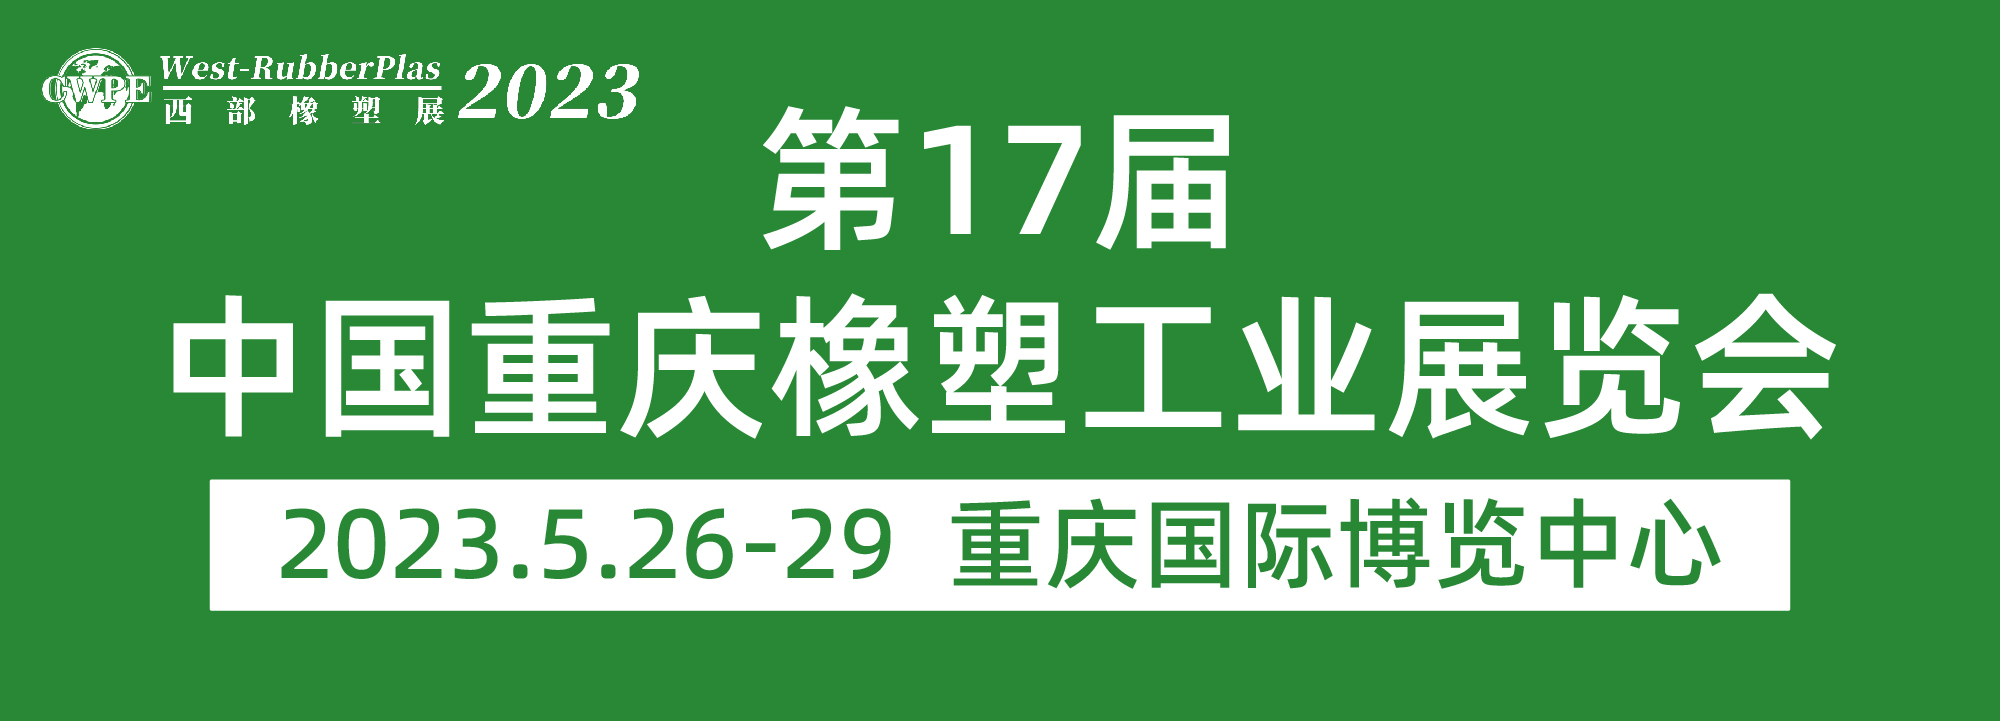 第十七届中国重庆橡塑工业展览会